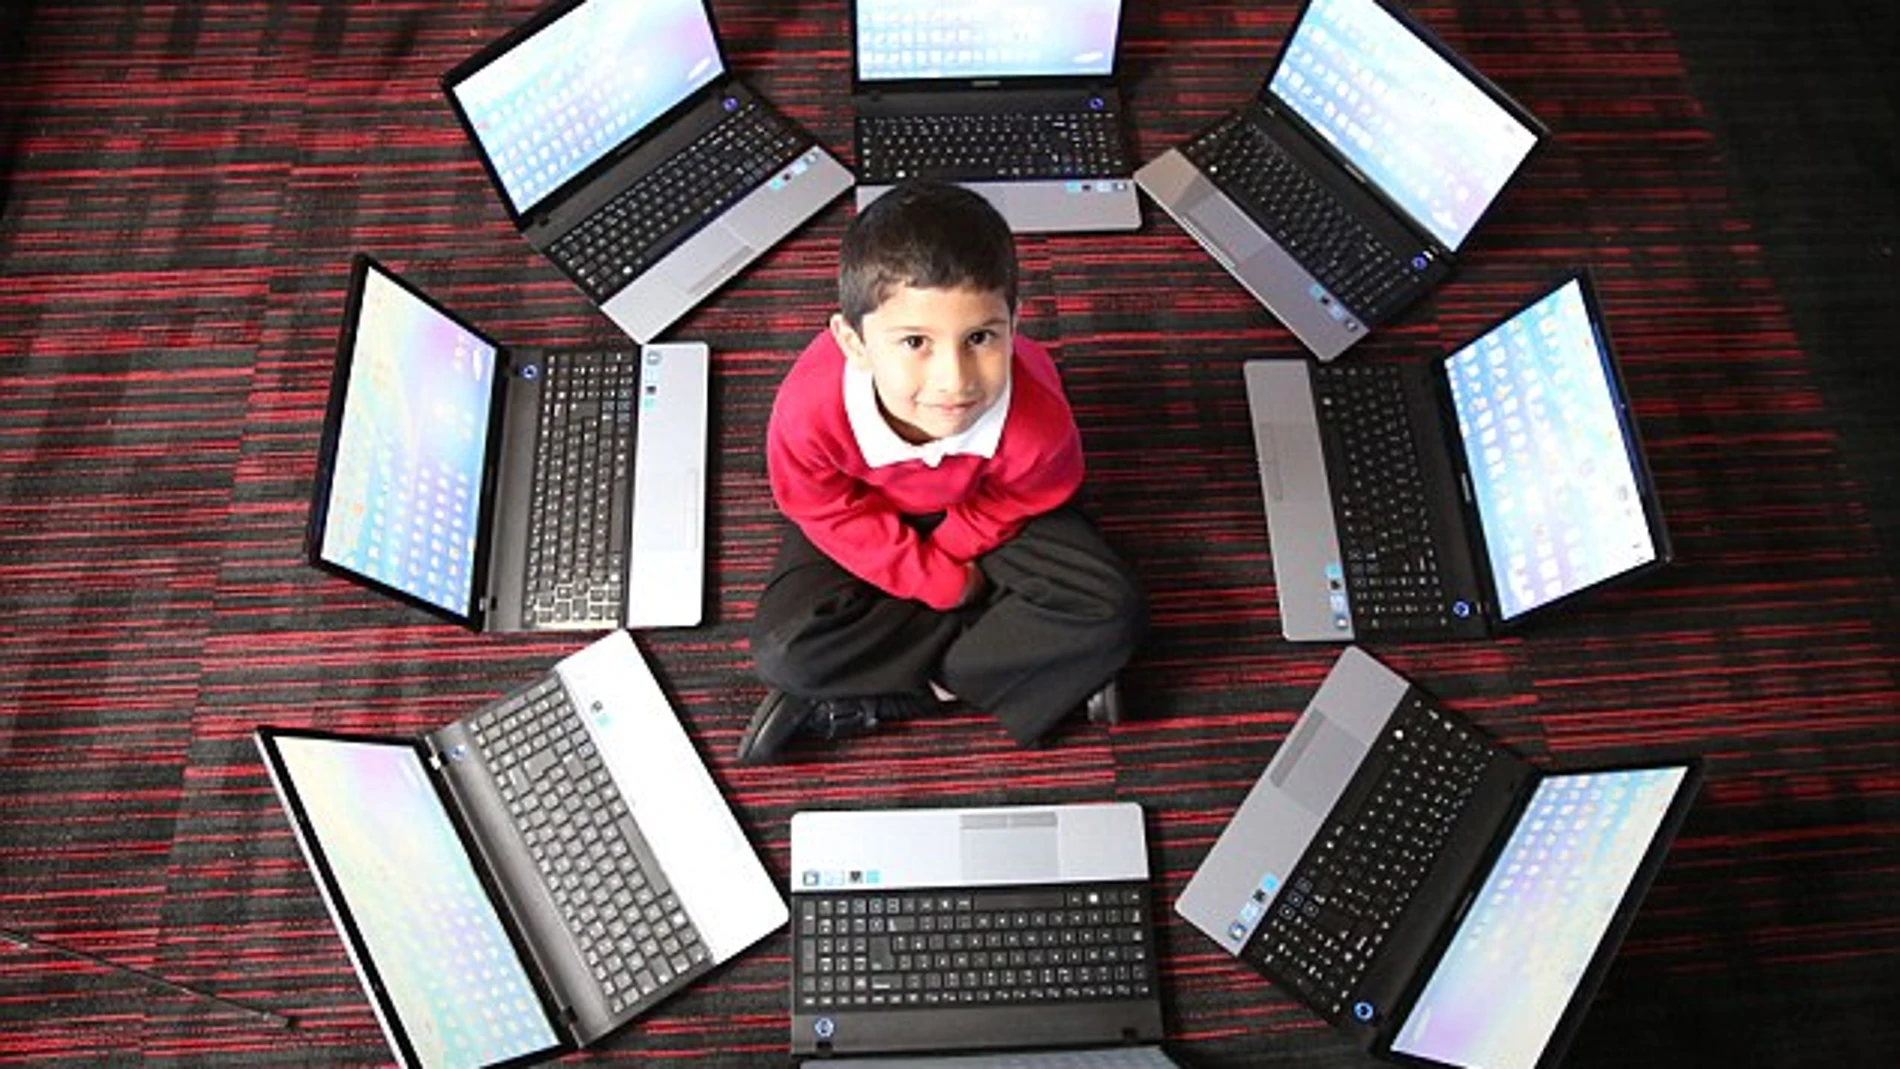 Ayan rodeado de varios ordenadores portátiles